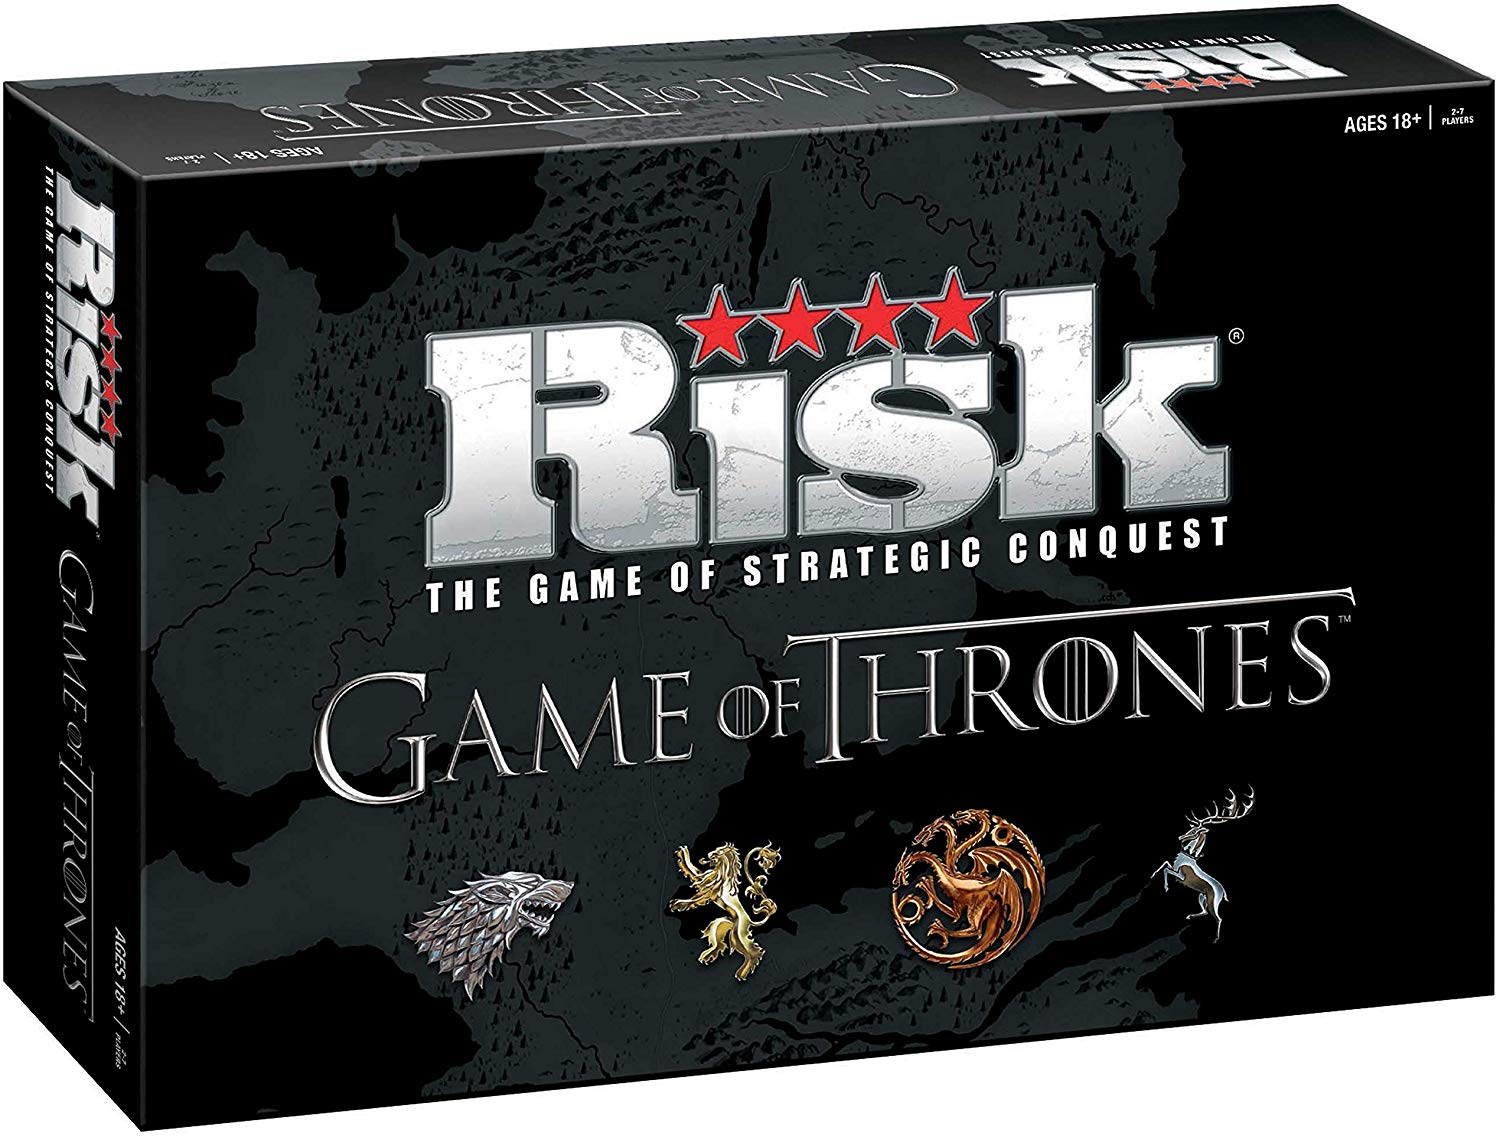 სამაგიდო თამაში რისკი. სამეფო კარის თამაშები - საკოლექციო გამოცემა (Risk Game of Thrones - Collectors Edition)